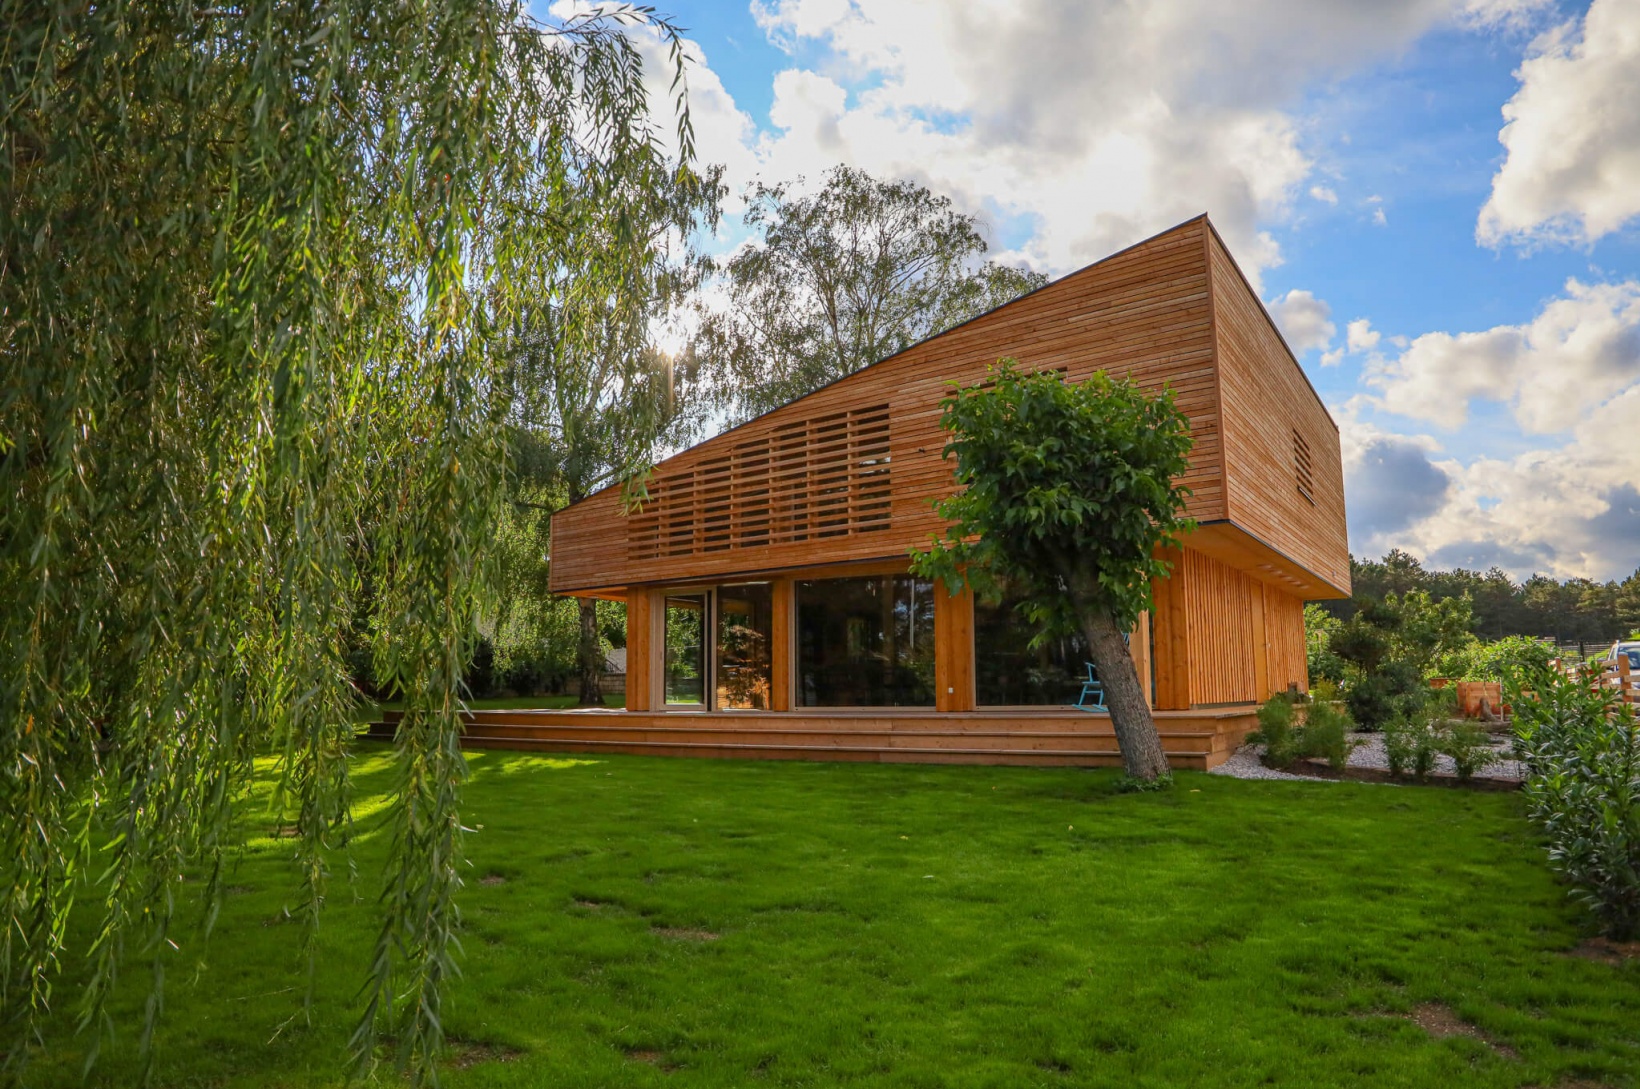 Futuristisches Wohnhaus aus Holz befindet sich von Bäumen umgeben im Grünen|wohnhaus-futuristisch-im-gruenen_kirchberger-holzbau